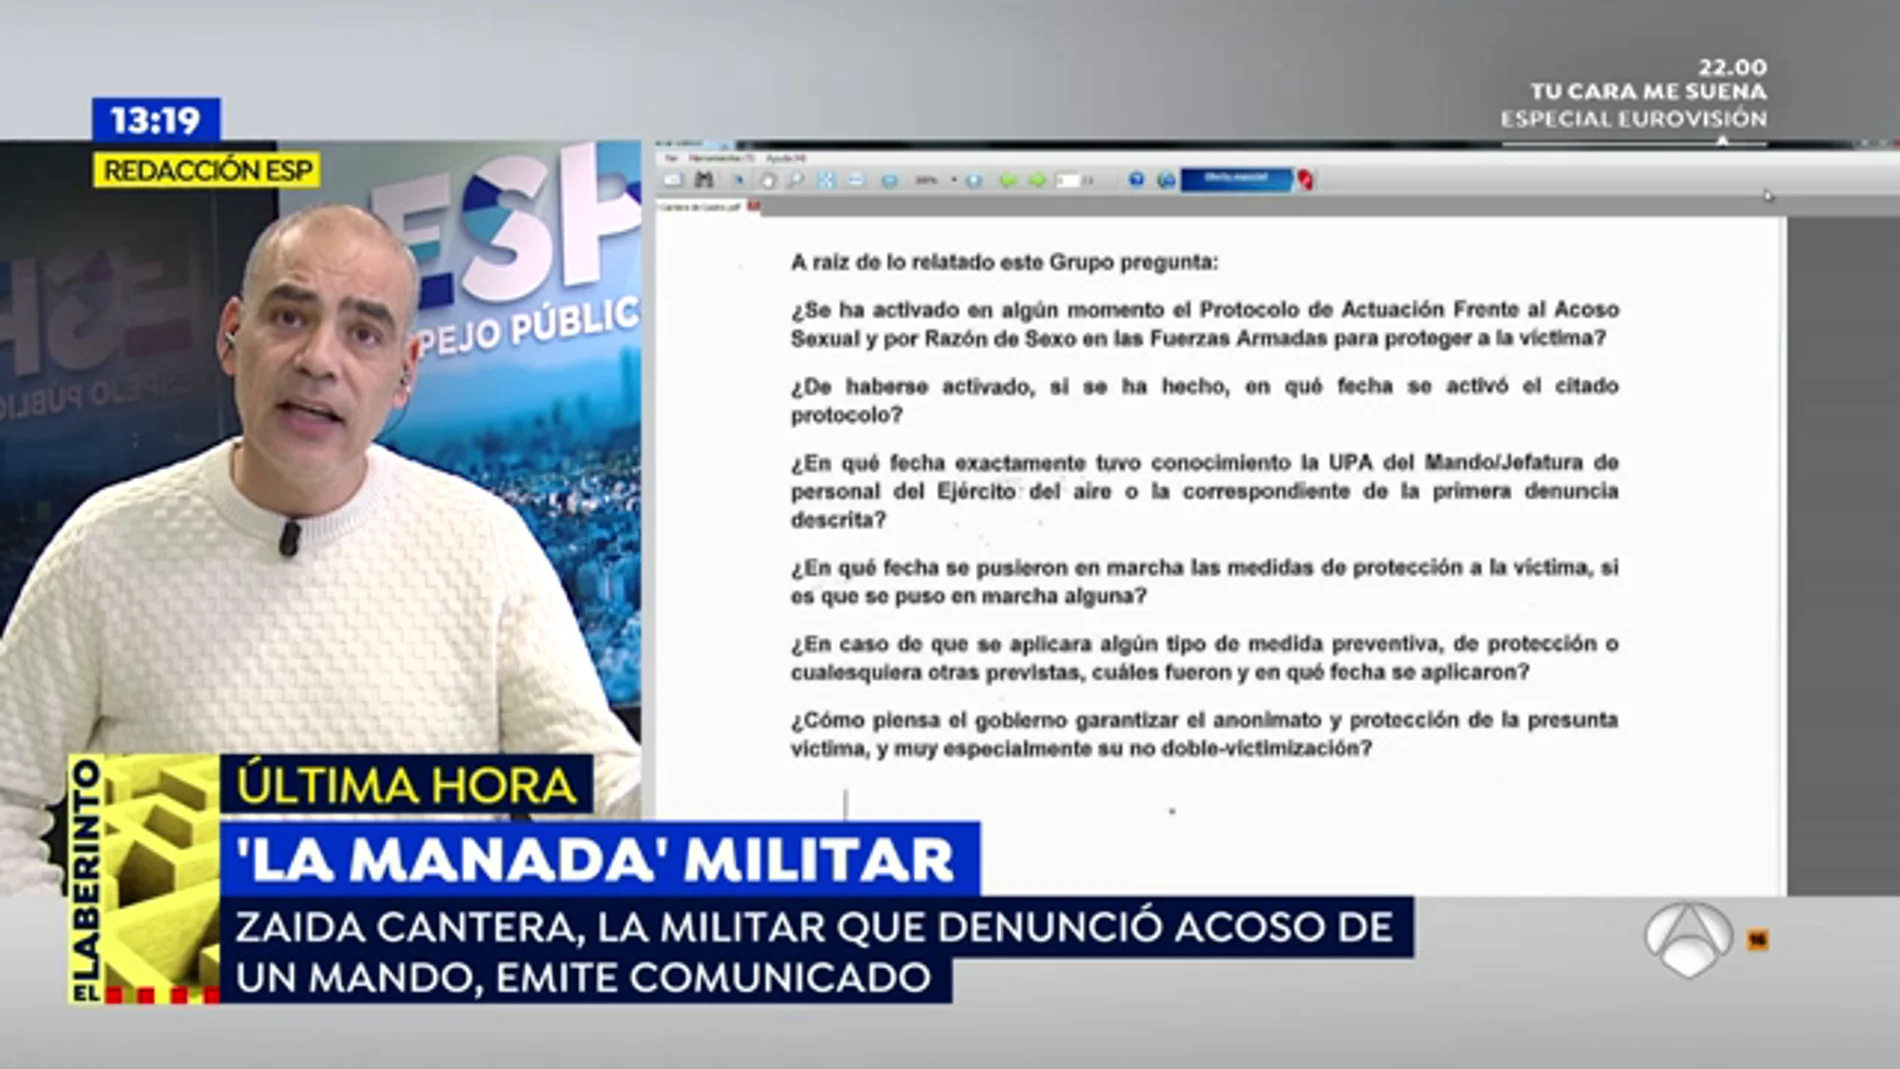 El comunicado de Zaida Cantera, la comandante que denunció acoso sexual de un mando, sobre la 'Manada' militar